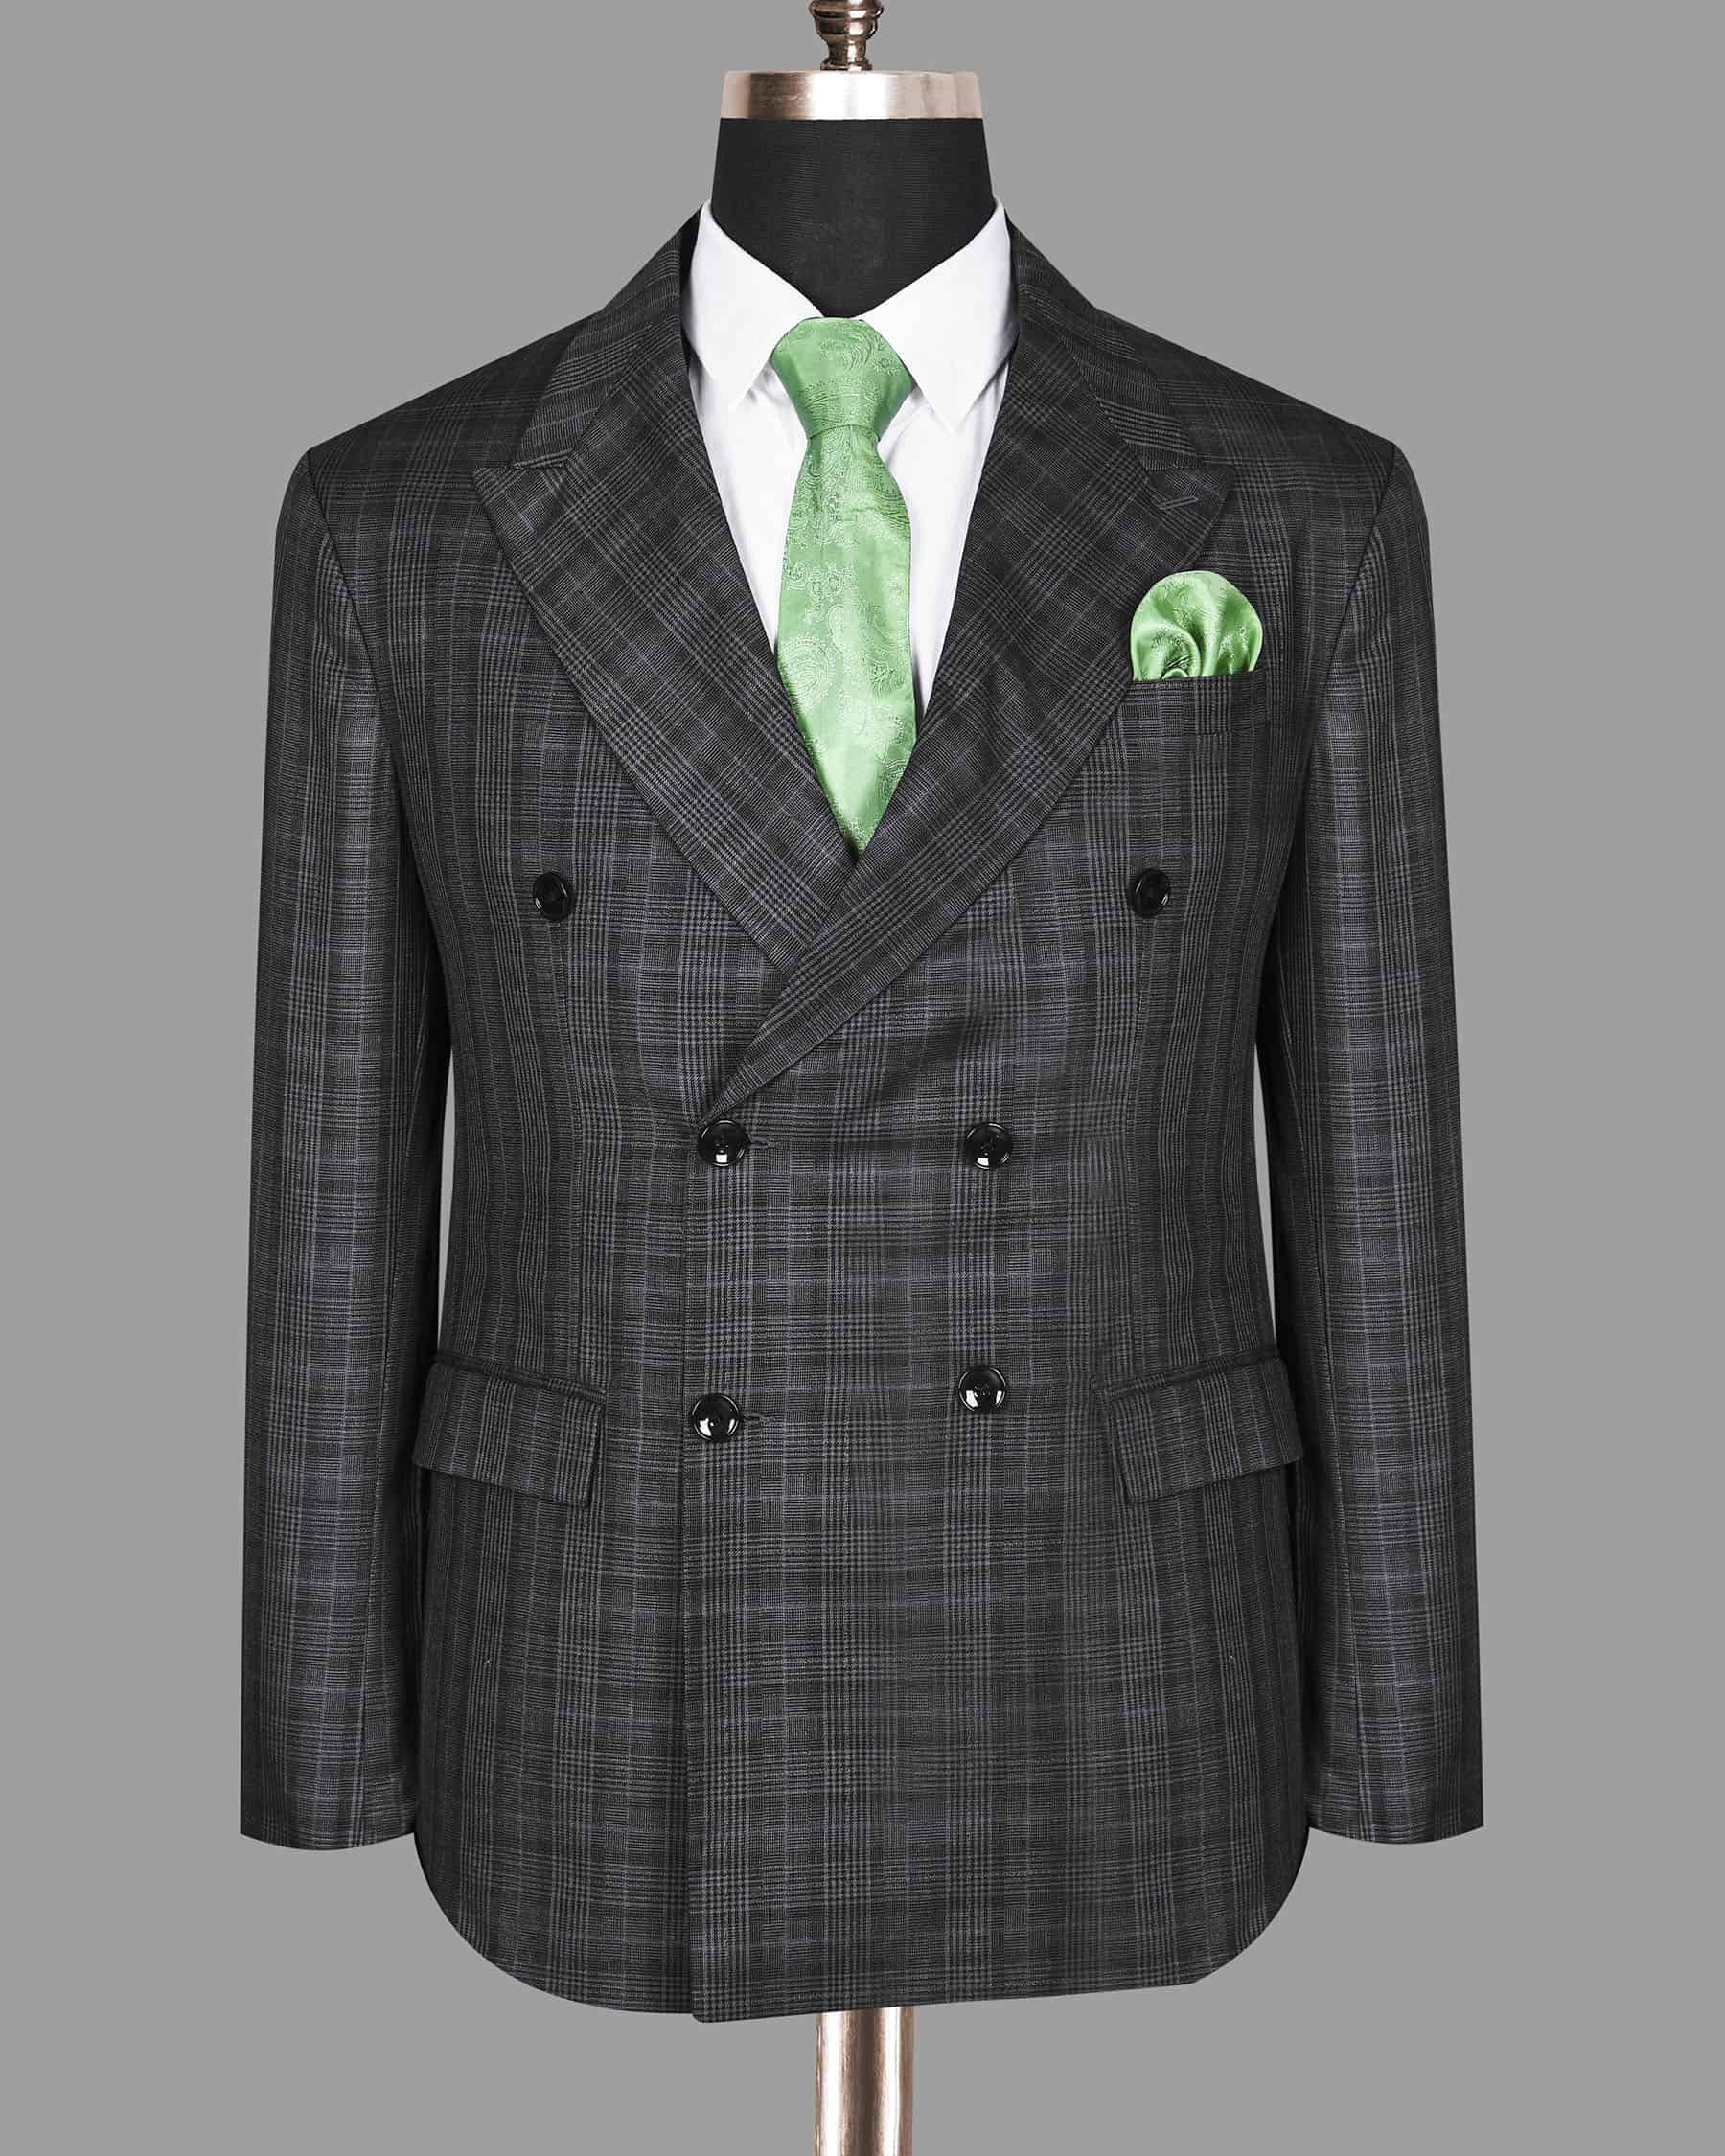 Men's Suits | Slim, Tailored & Regular Fit Suits | Suit Direct